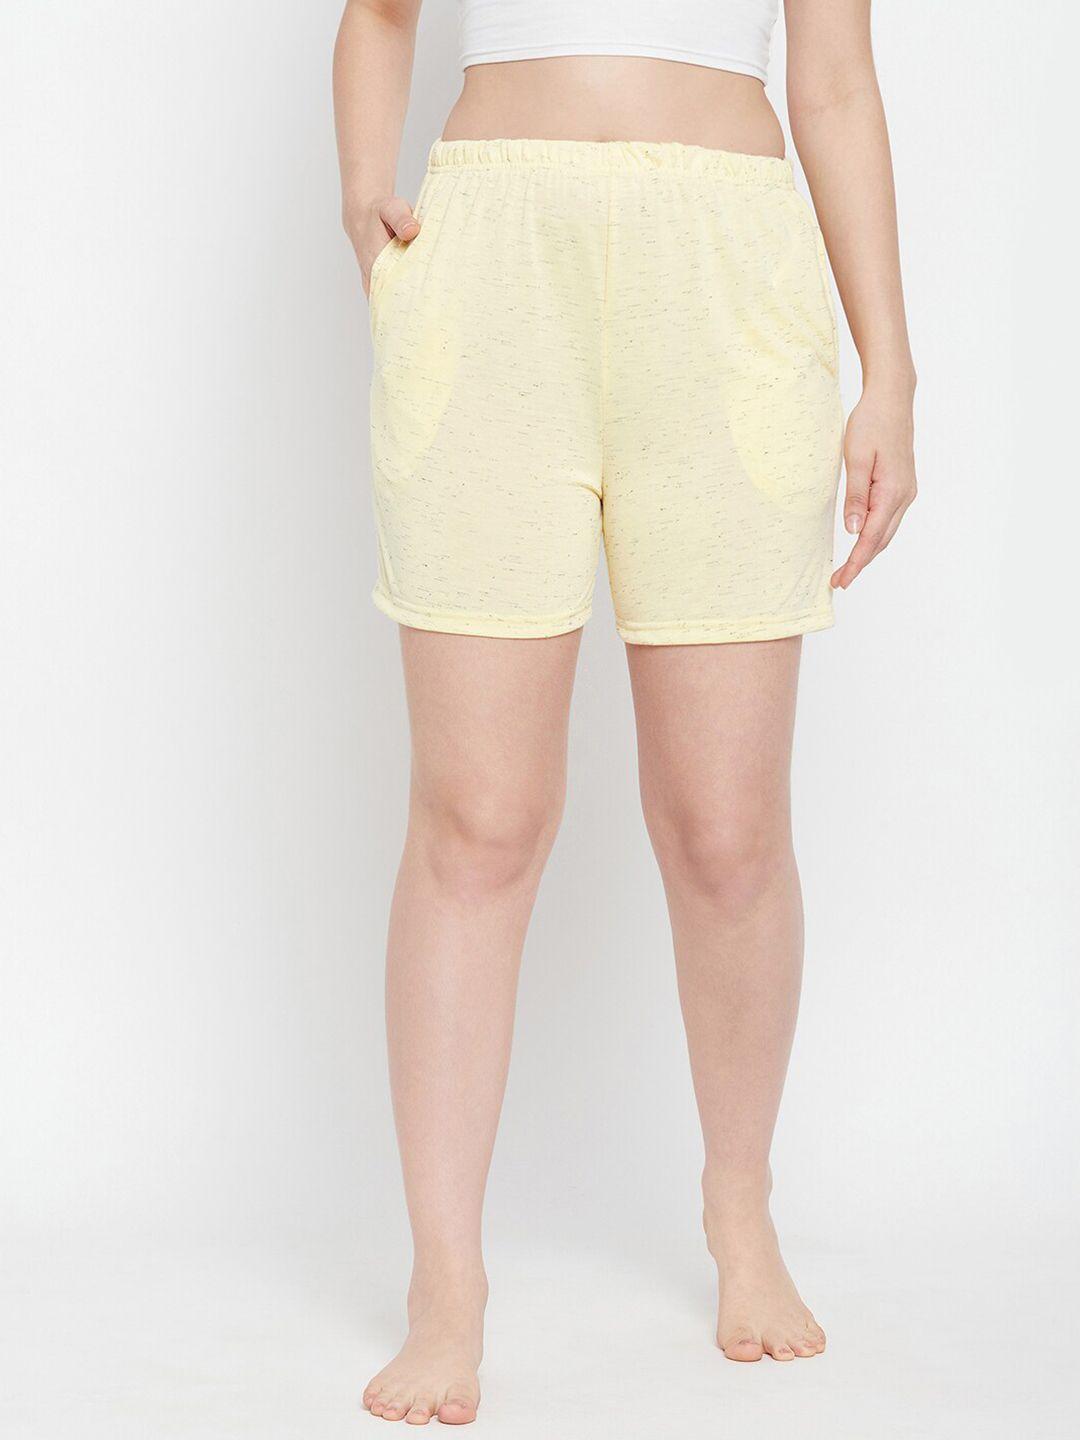 clovia-women-lounge-shorts--lb0145d023xl-yellow